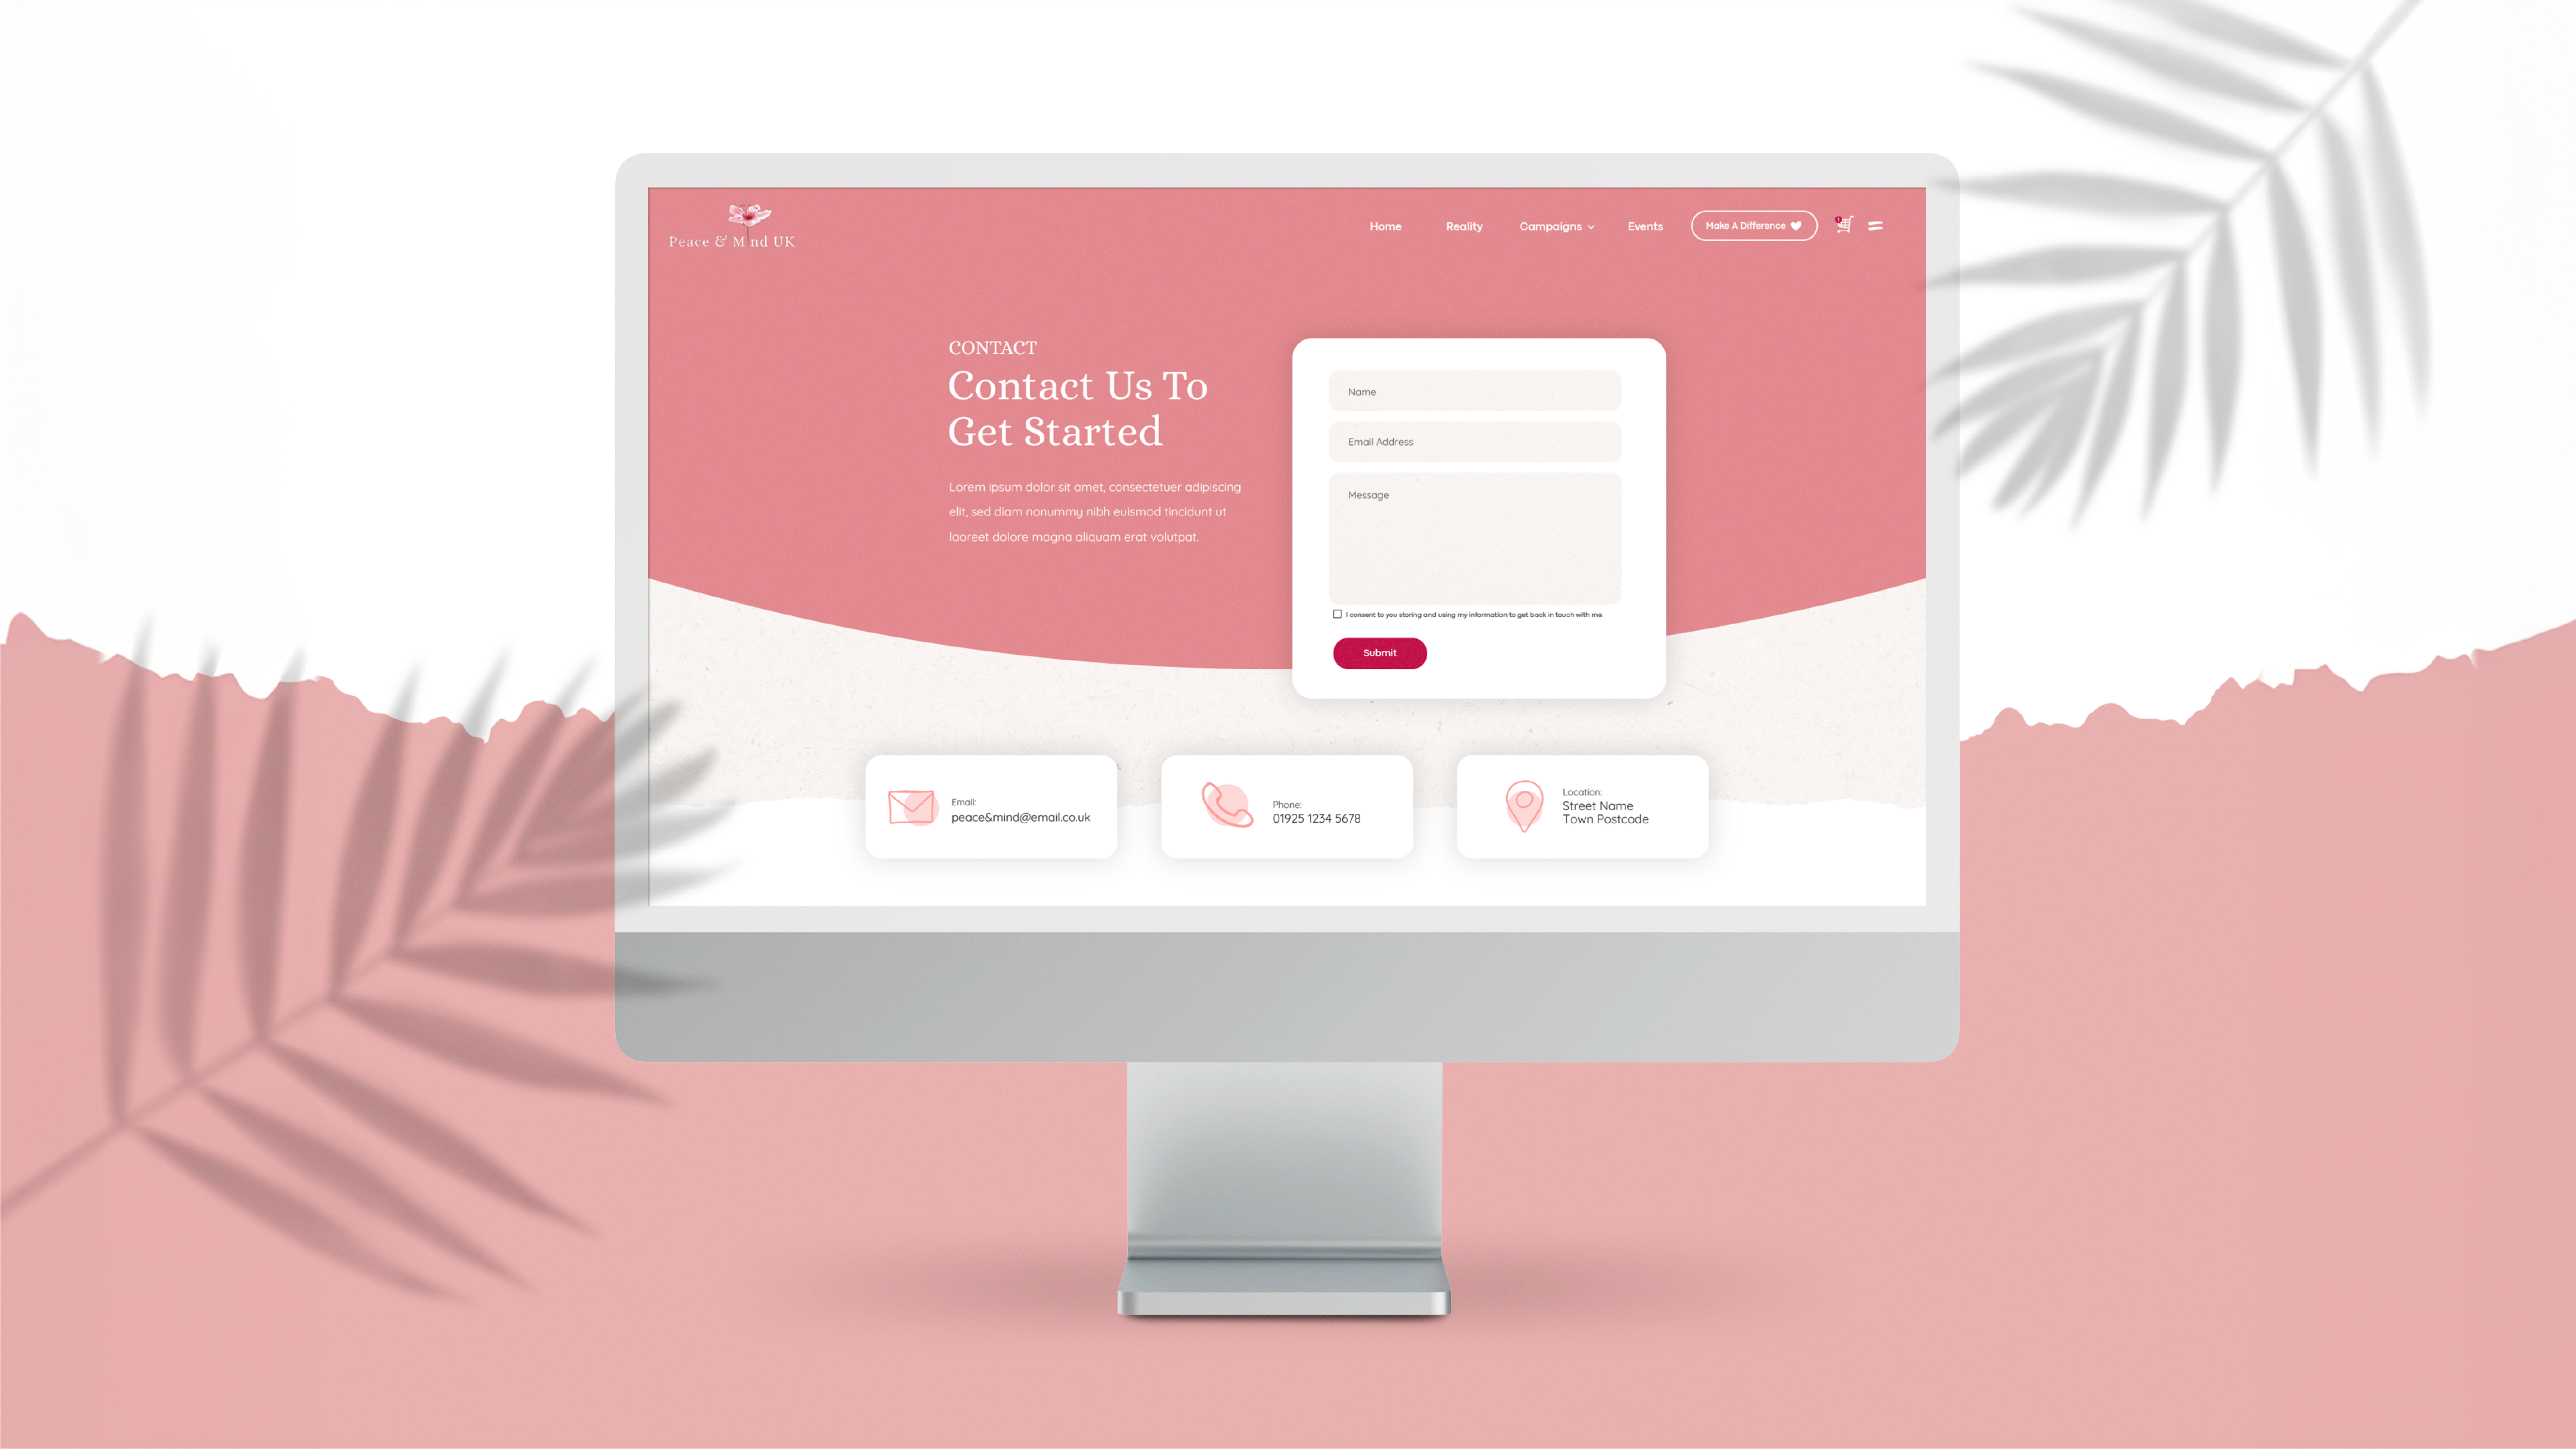 Peace & Mind – Website Design